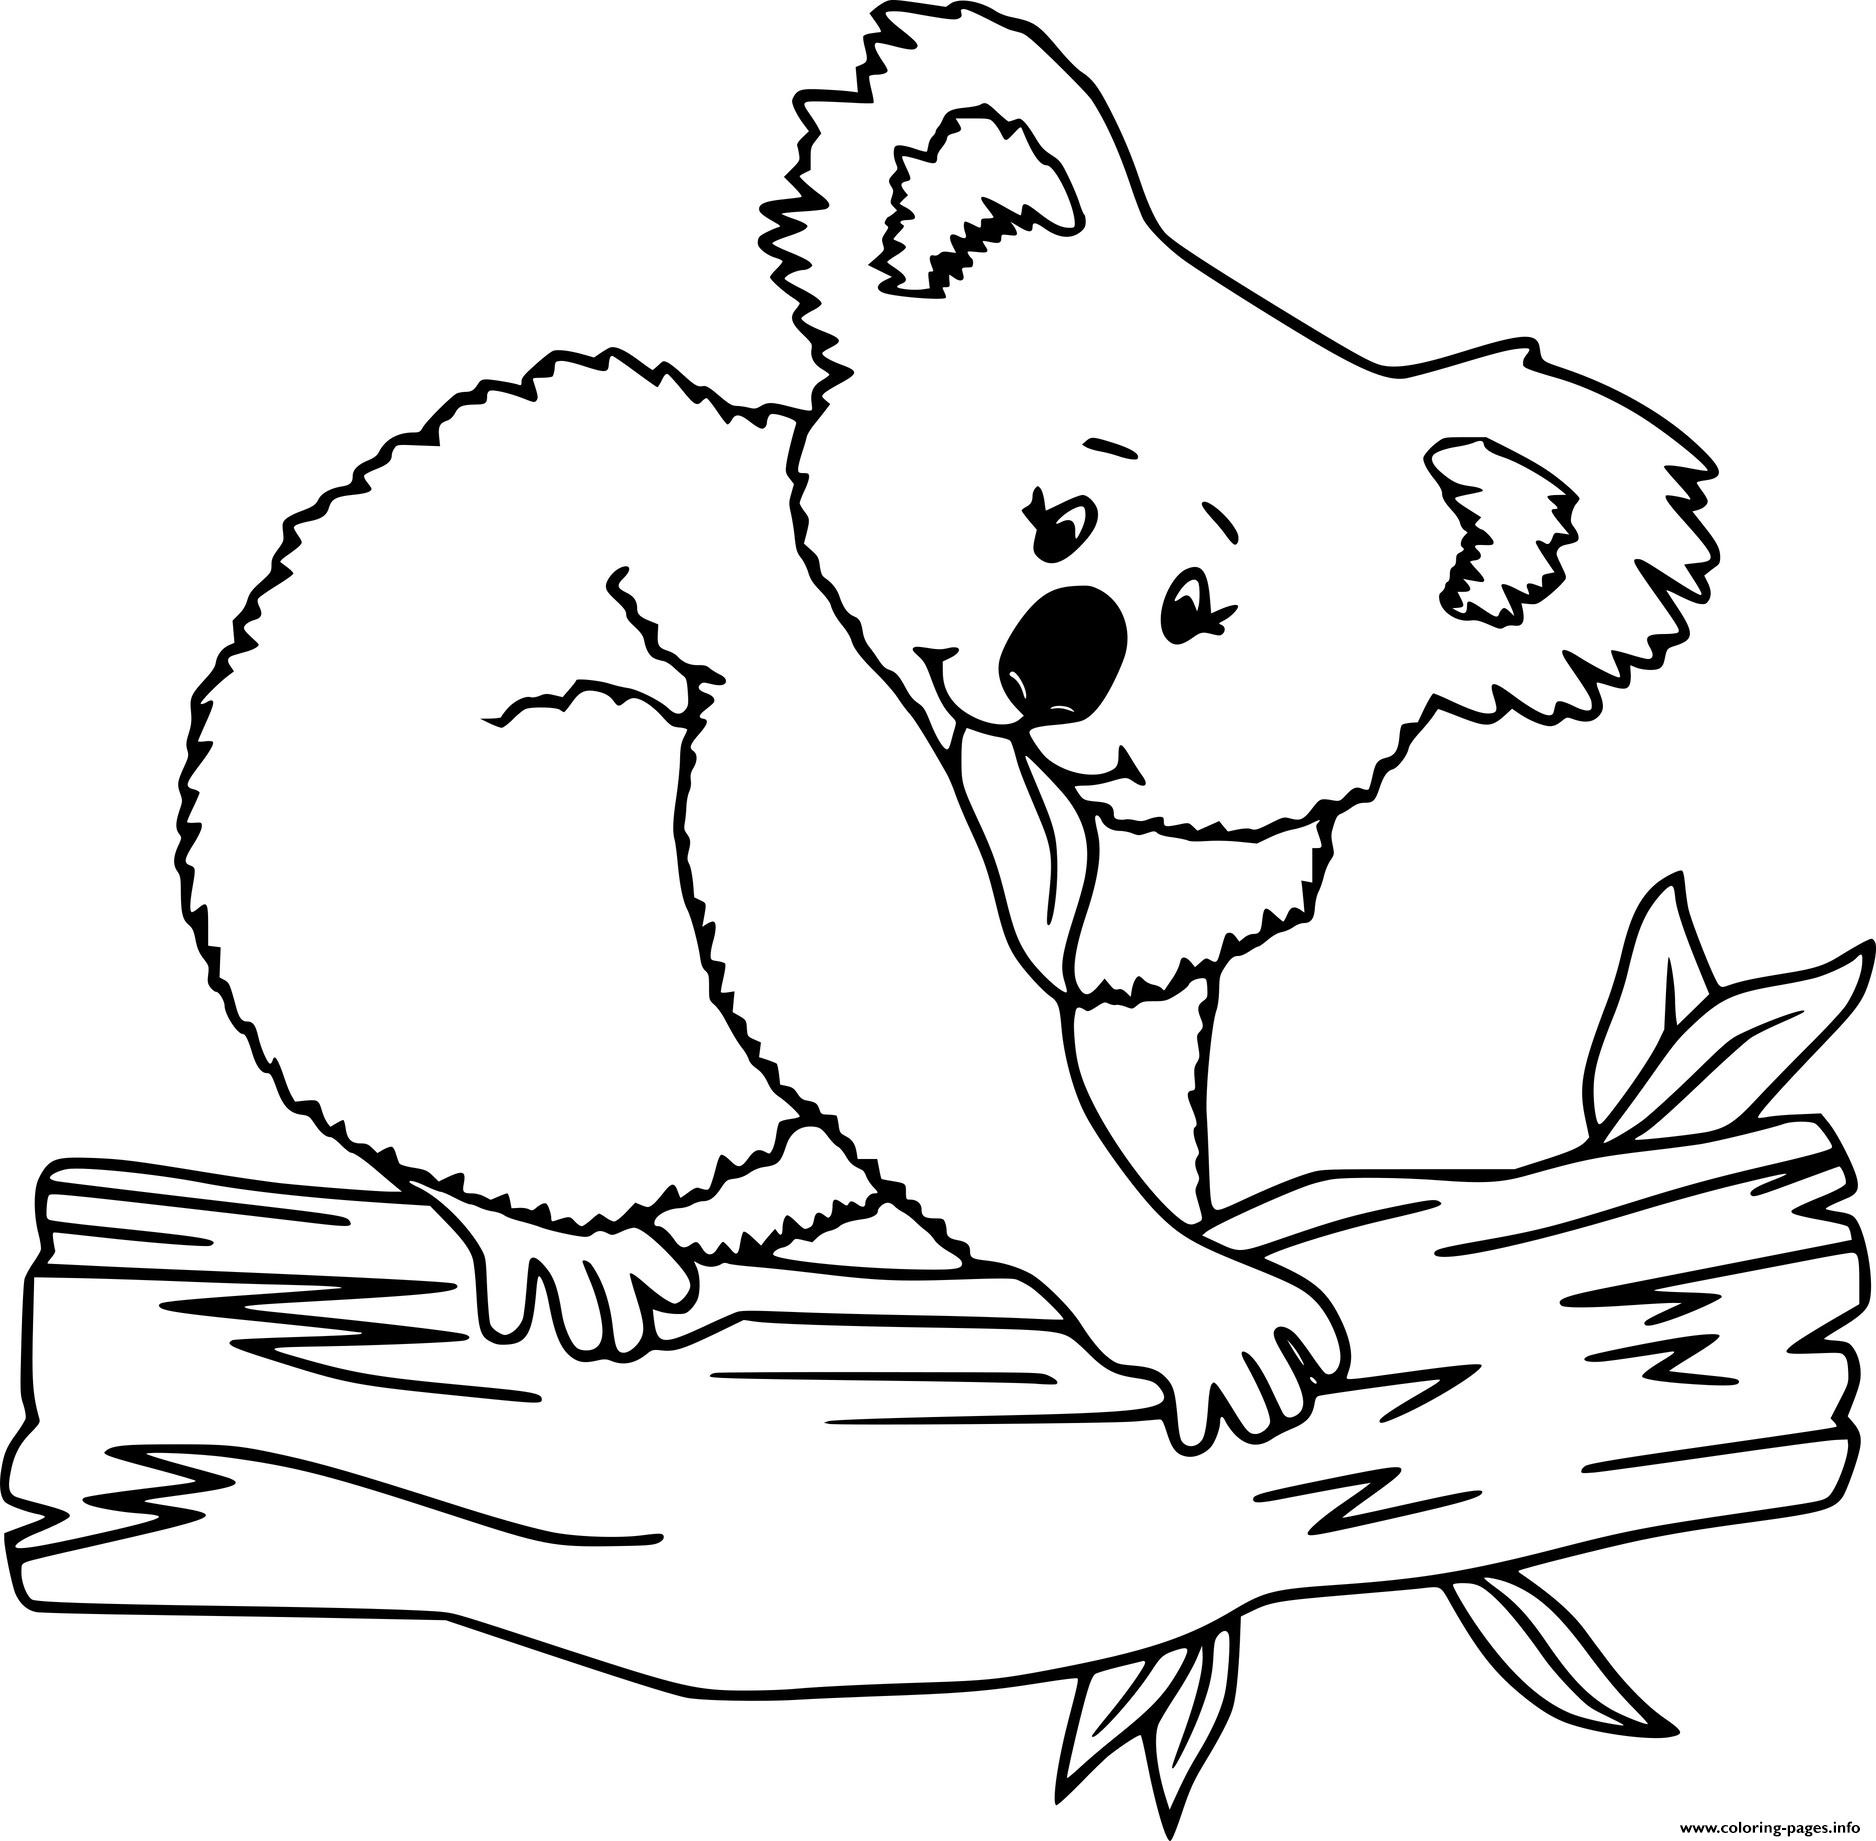 Koala On The Log coloring